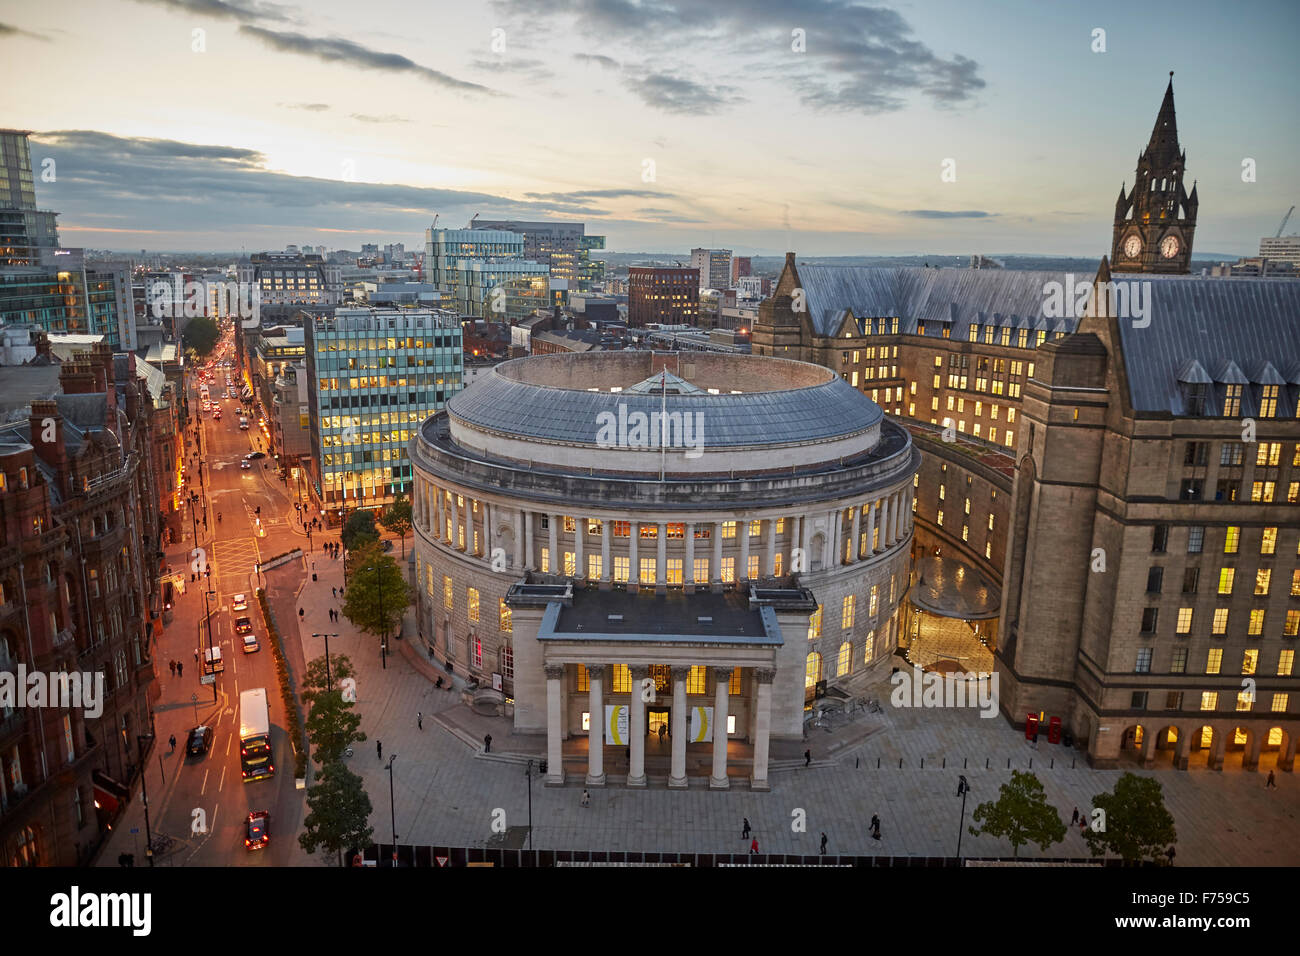 Manchester-Skyline zeigen sich die Dächer und central Library und dem Rathaus Erweiterung Turm Lichtschacht Strahlen durch die Wolken Stockfoto